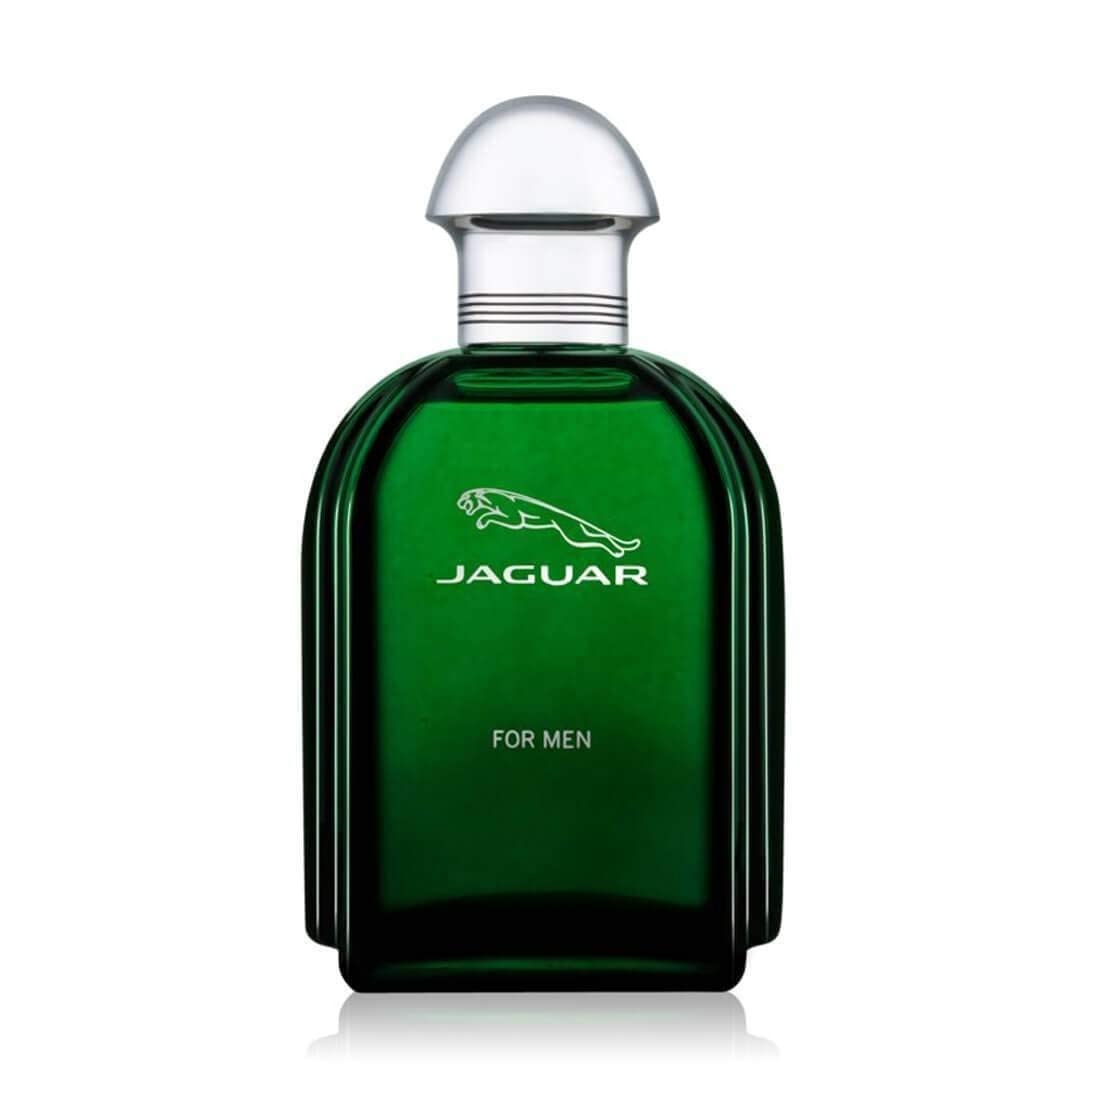 Jaguar Eau De Toilette Spray 3.4 Ounce / 100 Ml for Men, 3.4 Ounce, Multi (Pack of 2)